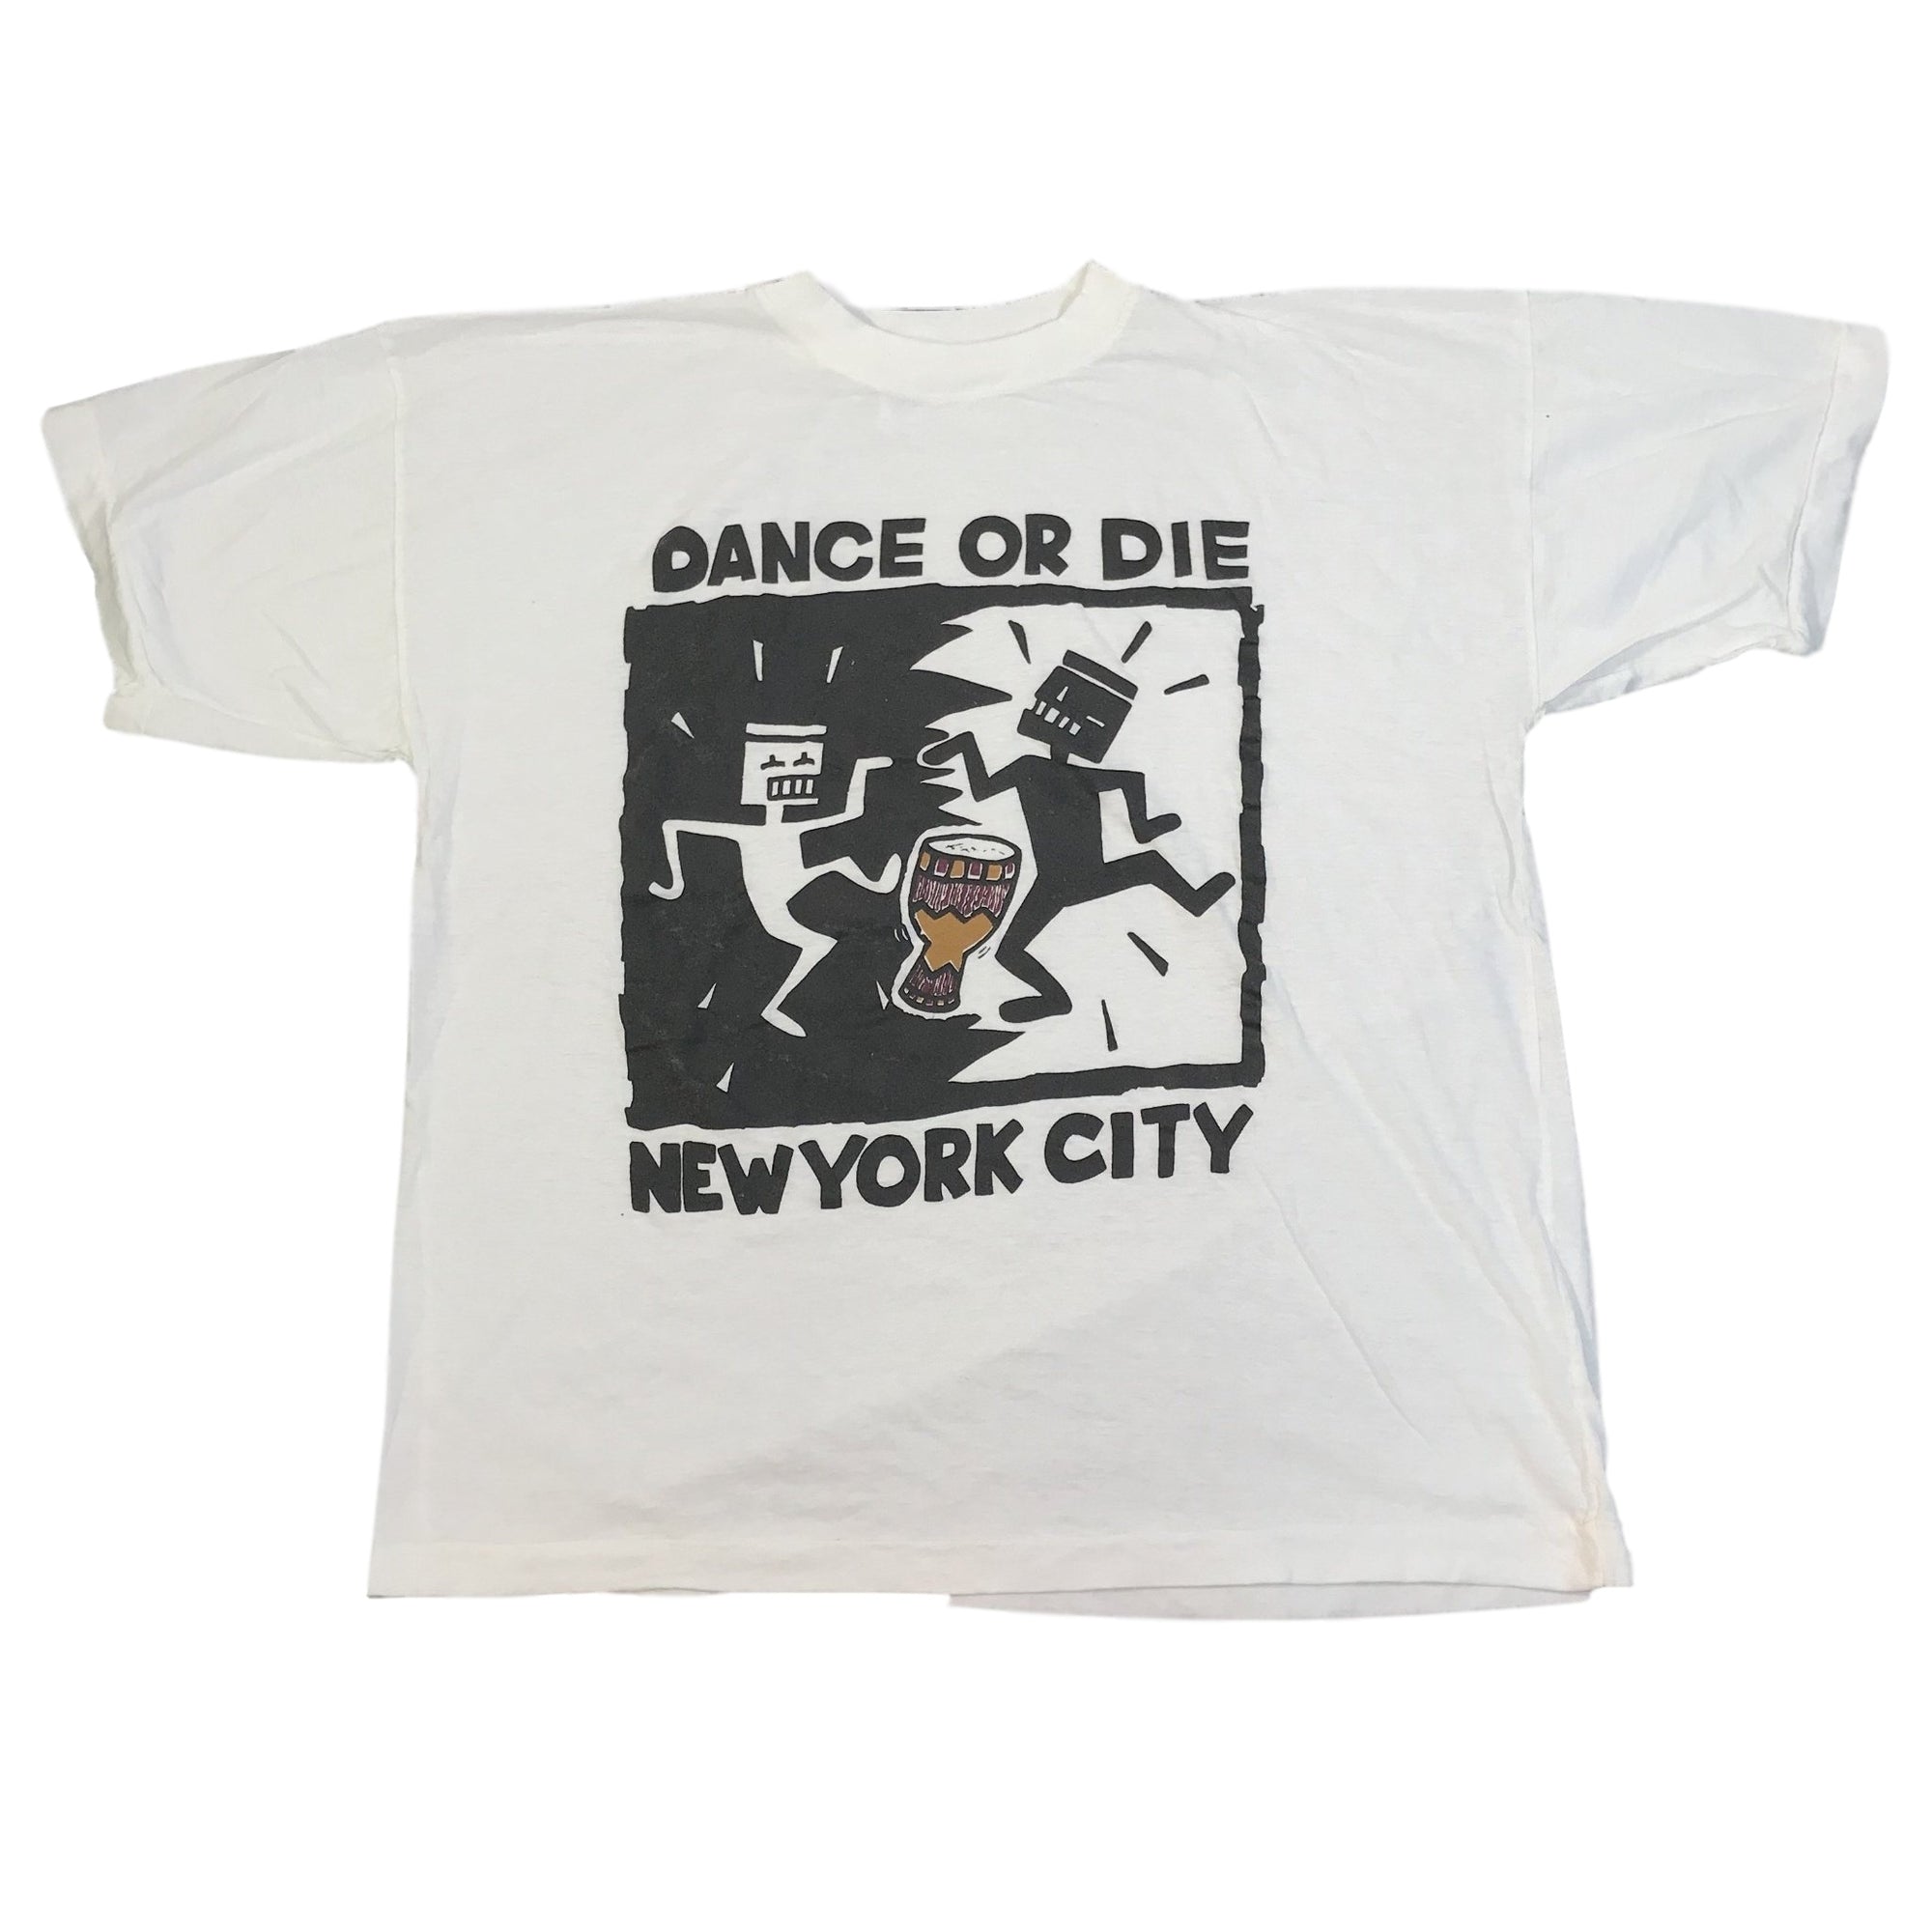 Vintage Keith Haring "Dance or Die" T-Shirt - jointcustodydc